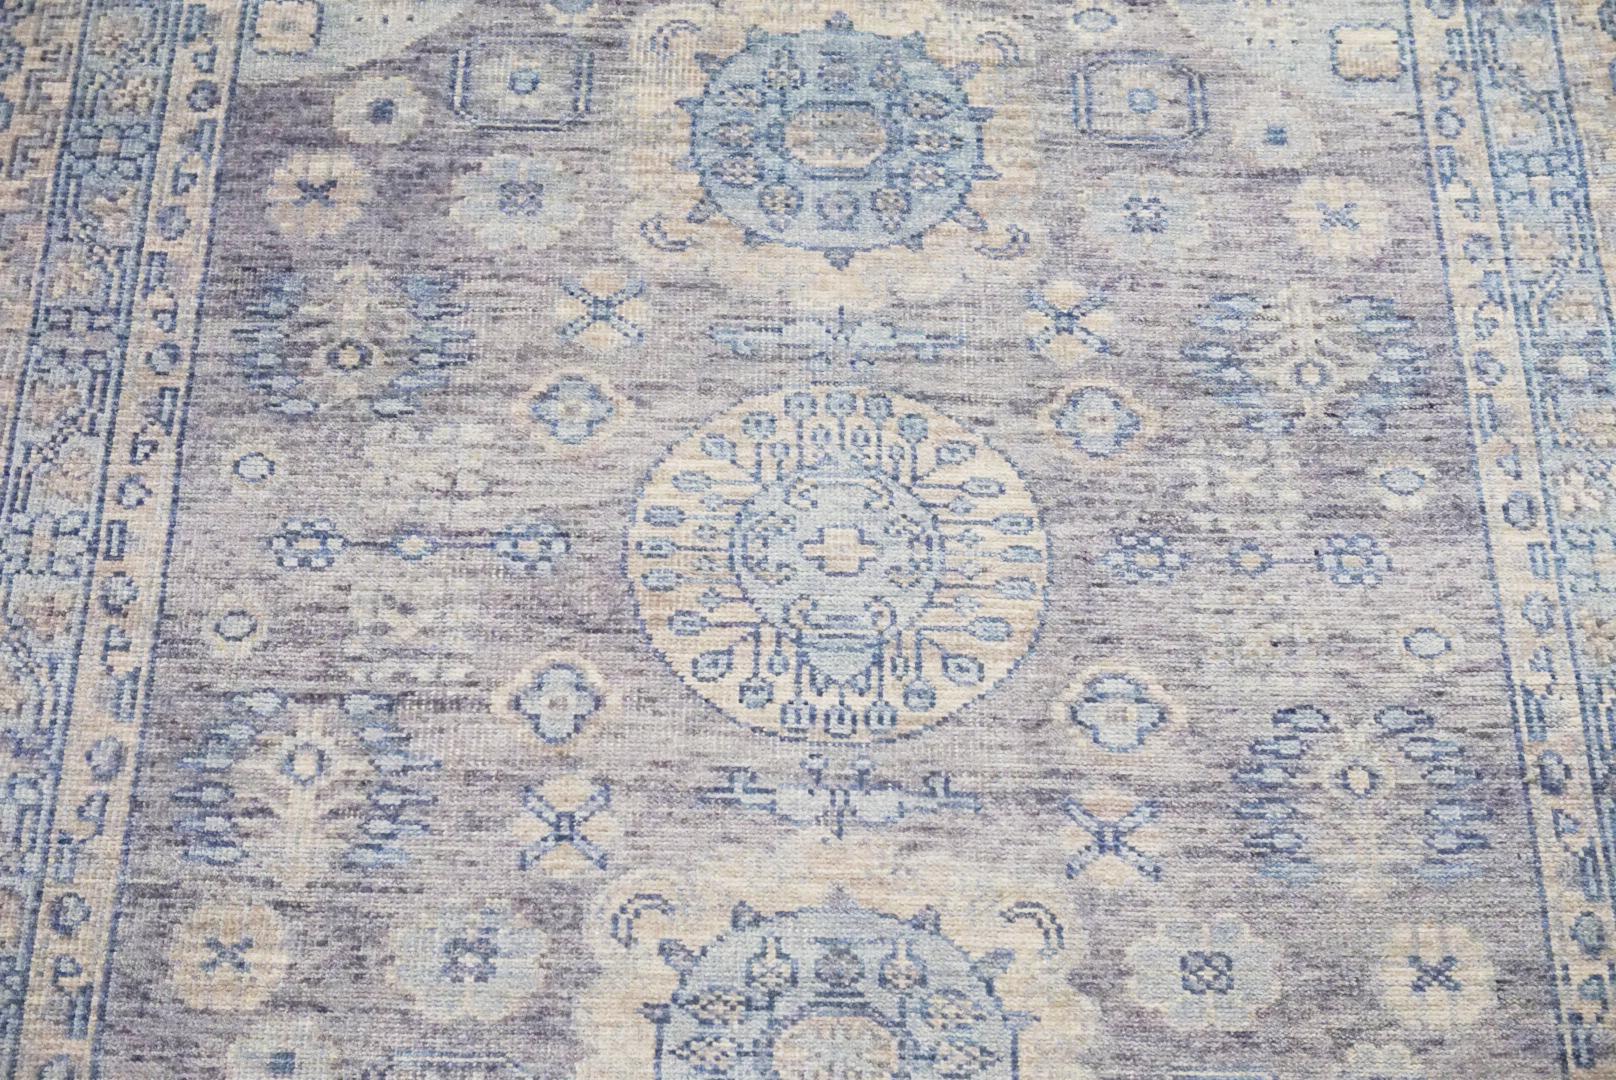 Handgeknüpfter Wollflor auf einem Baumwollgrund.     

Abmessungen: 8' x 10'            

Herkunft: Indien

Feldfarbe: Grau    

Farbe der Umrandung: Blassblau     

Akzentfarben: Hellblau